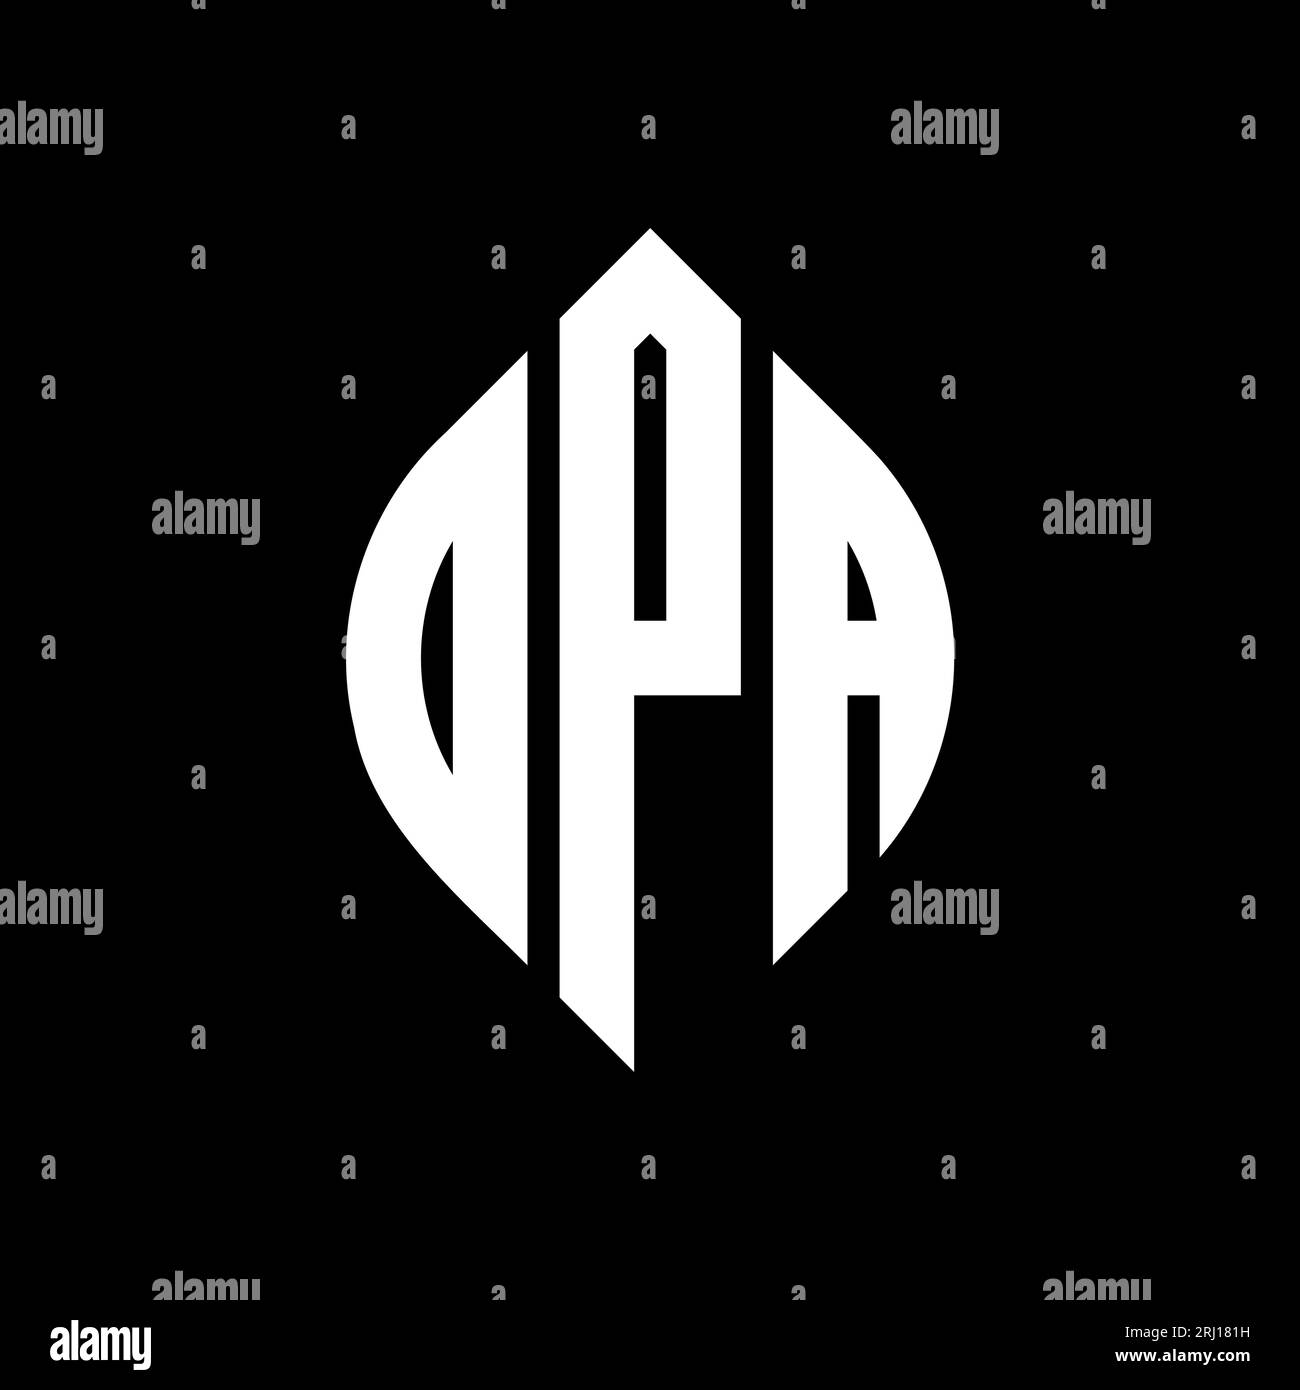 DPA-Logodesign mit kreisförmigem Buchstaben und Ellipsenform. DPA-Ellipsenbuchstaben im typografischen Stil. Die drei Initialen bilden ein kreisförmiges Logo. DPA-CI Stock Vektor